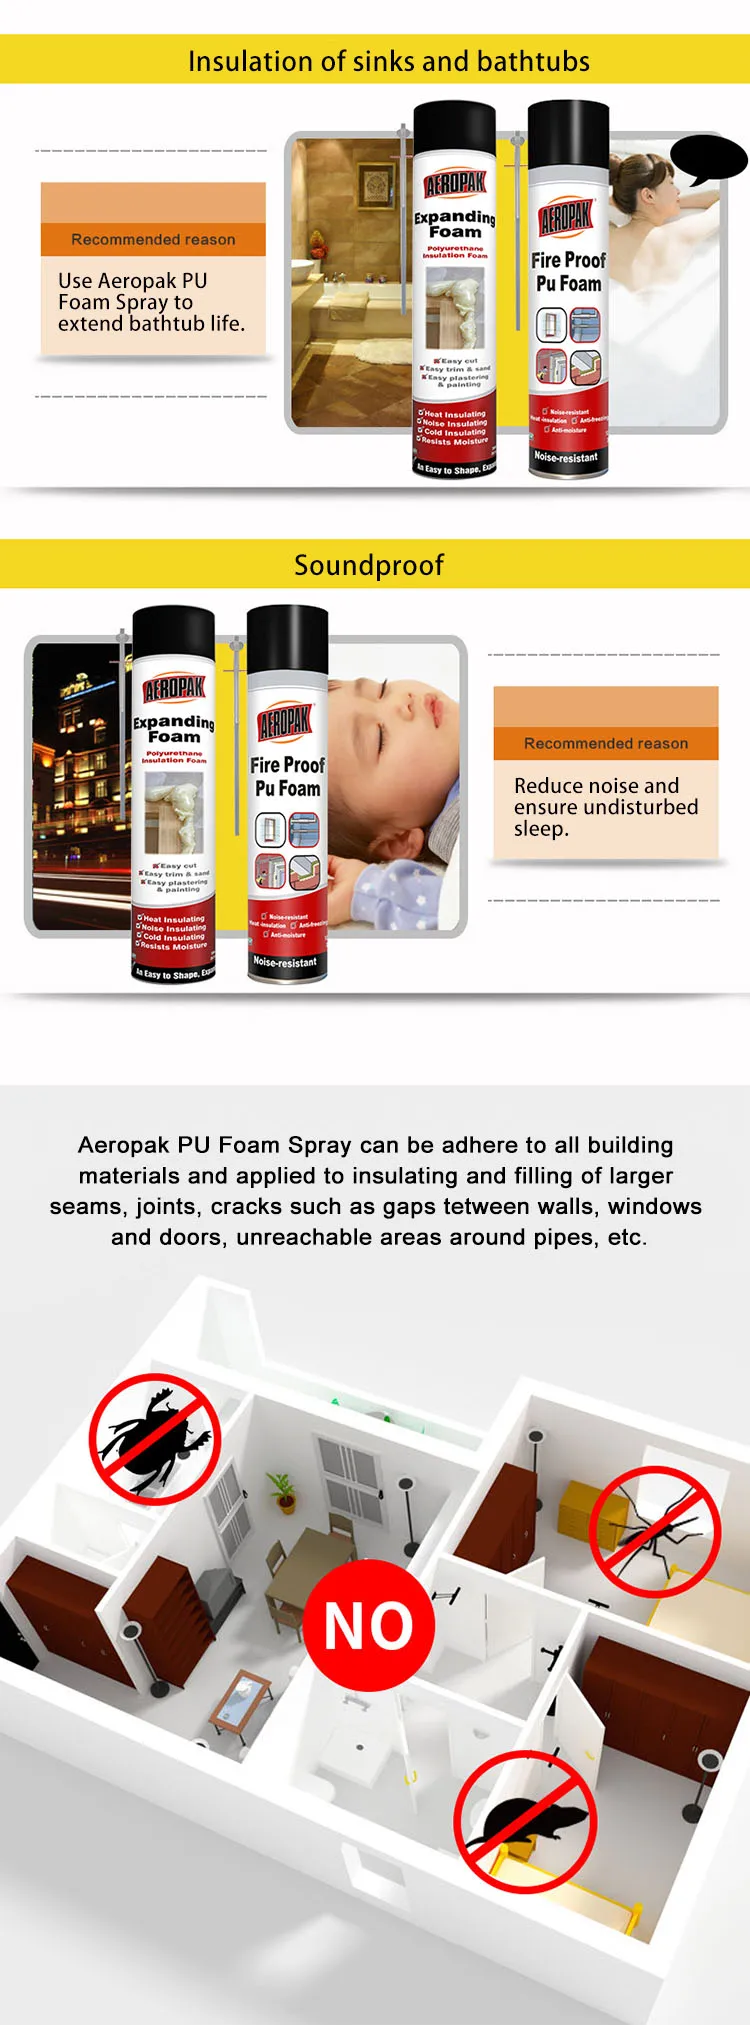 AEROPAK espuma de poliuretano spray or Spray PU Foam Insulation